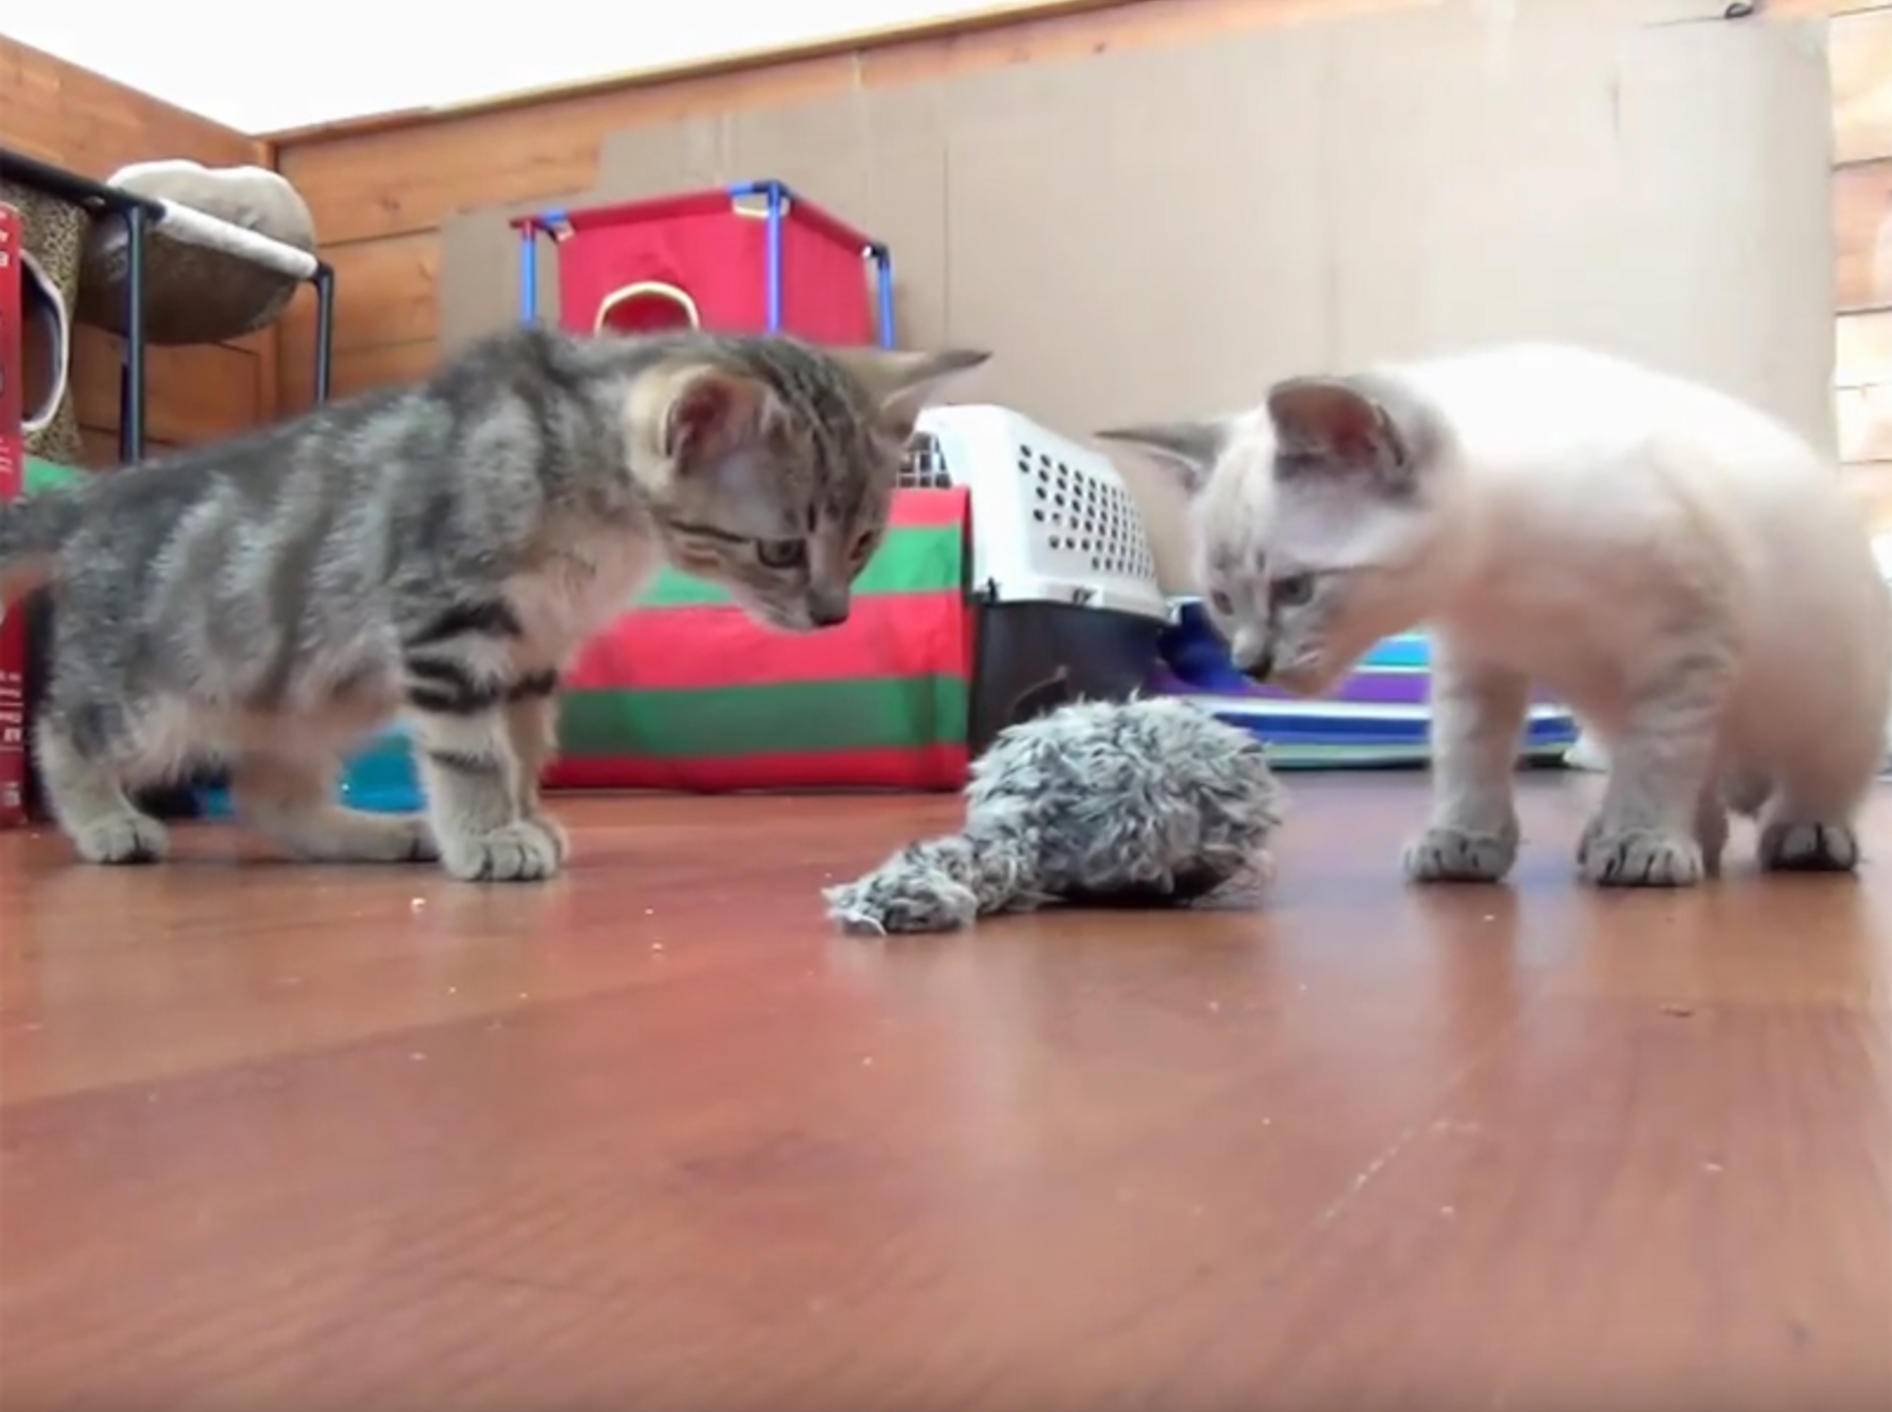 Zuckersüße Kätzchen spielen mit Aufziehmaus – YouTube / The Kits Cats